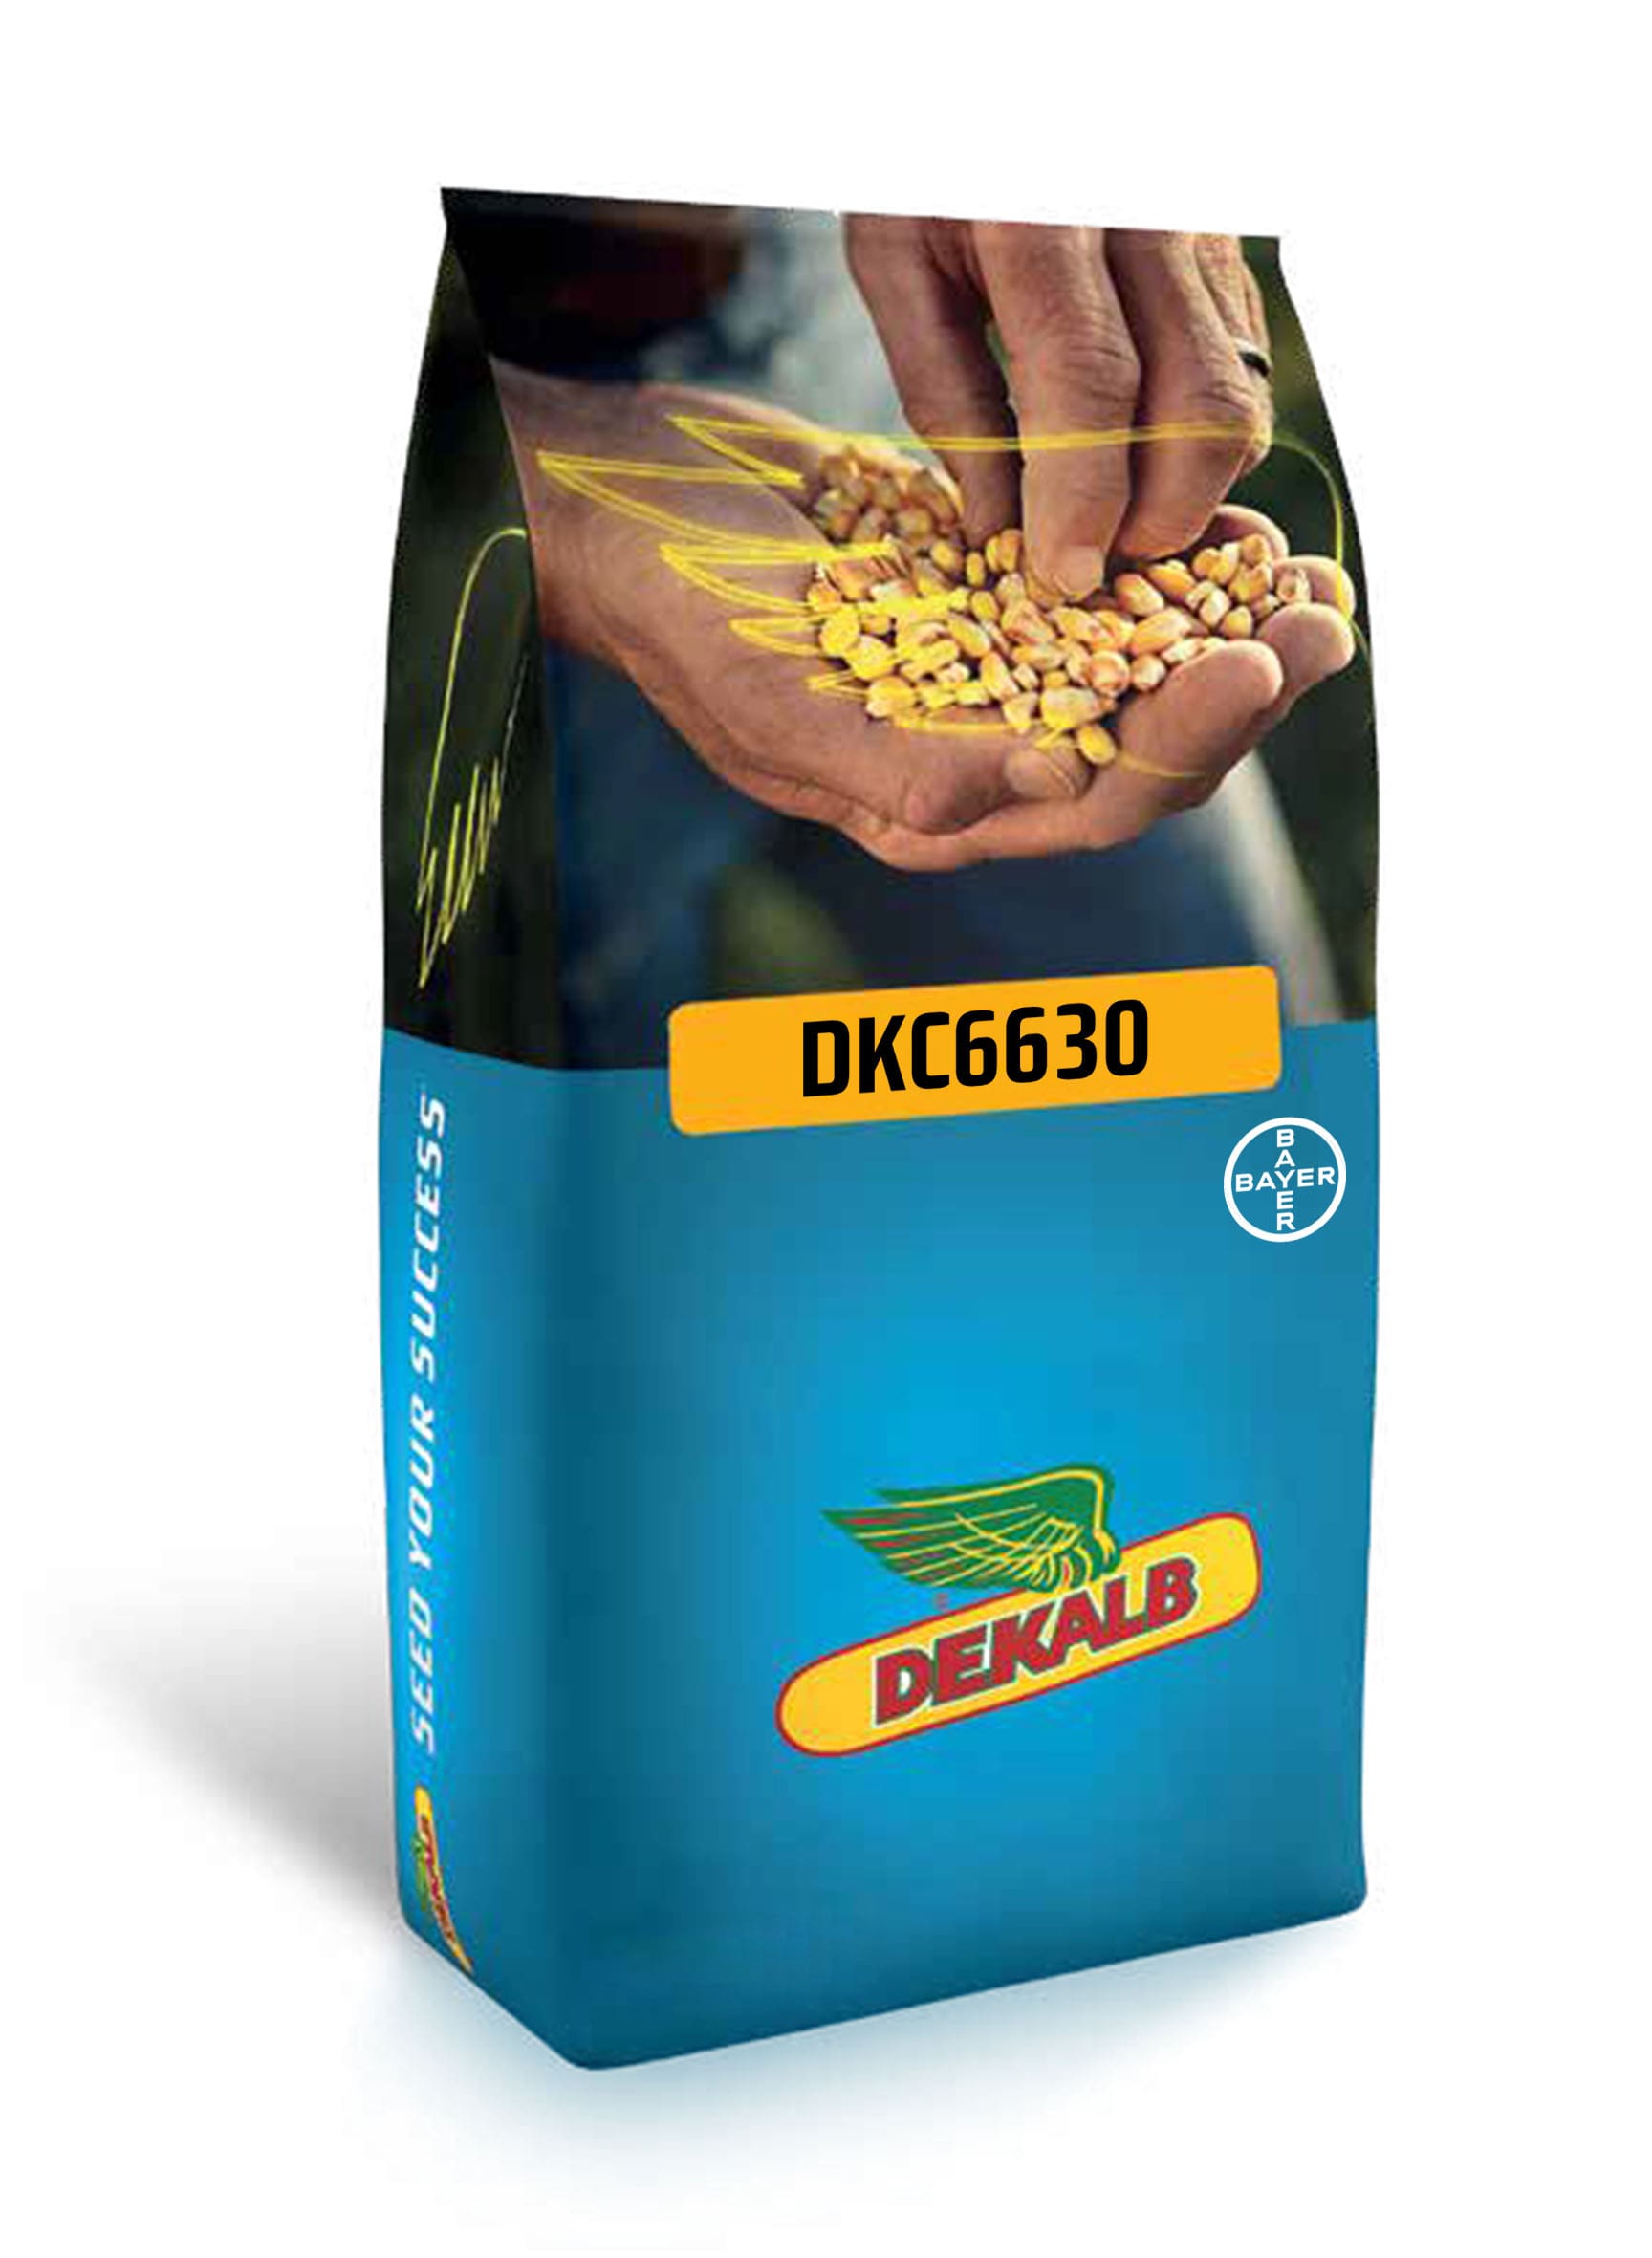 DKC6630